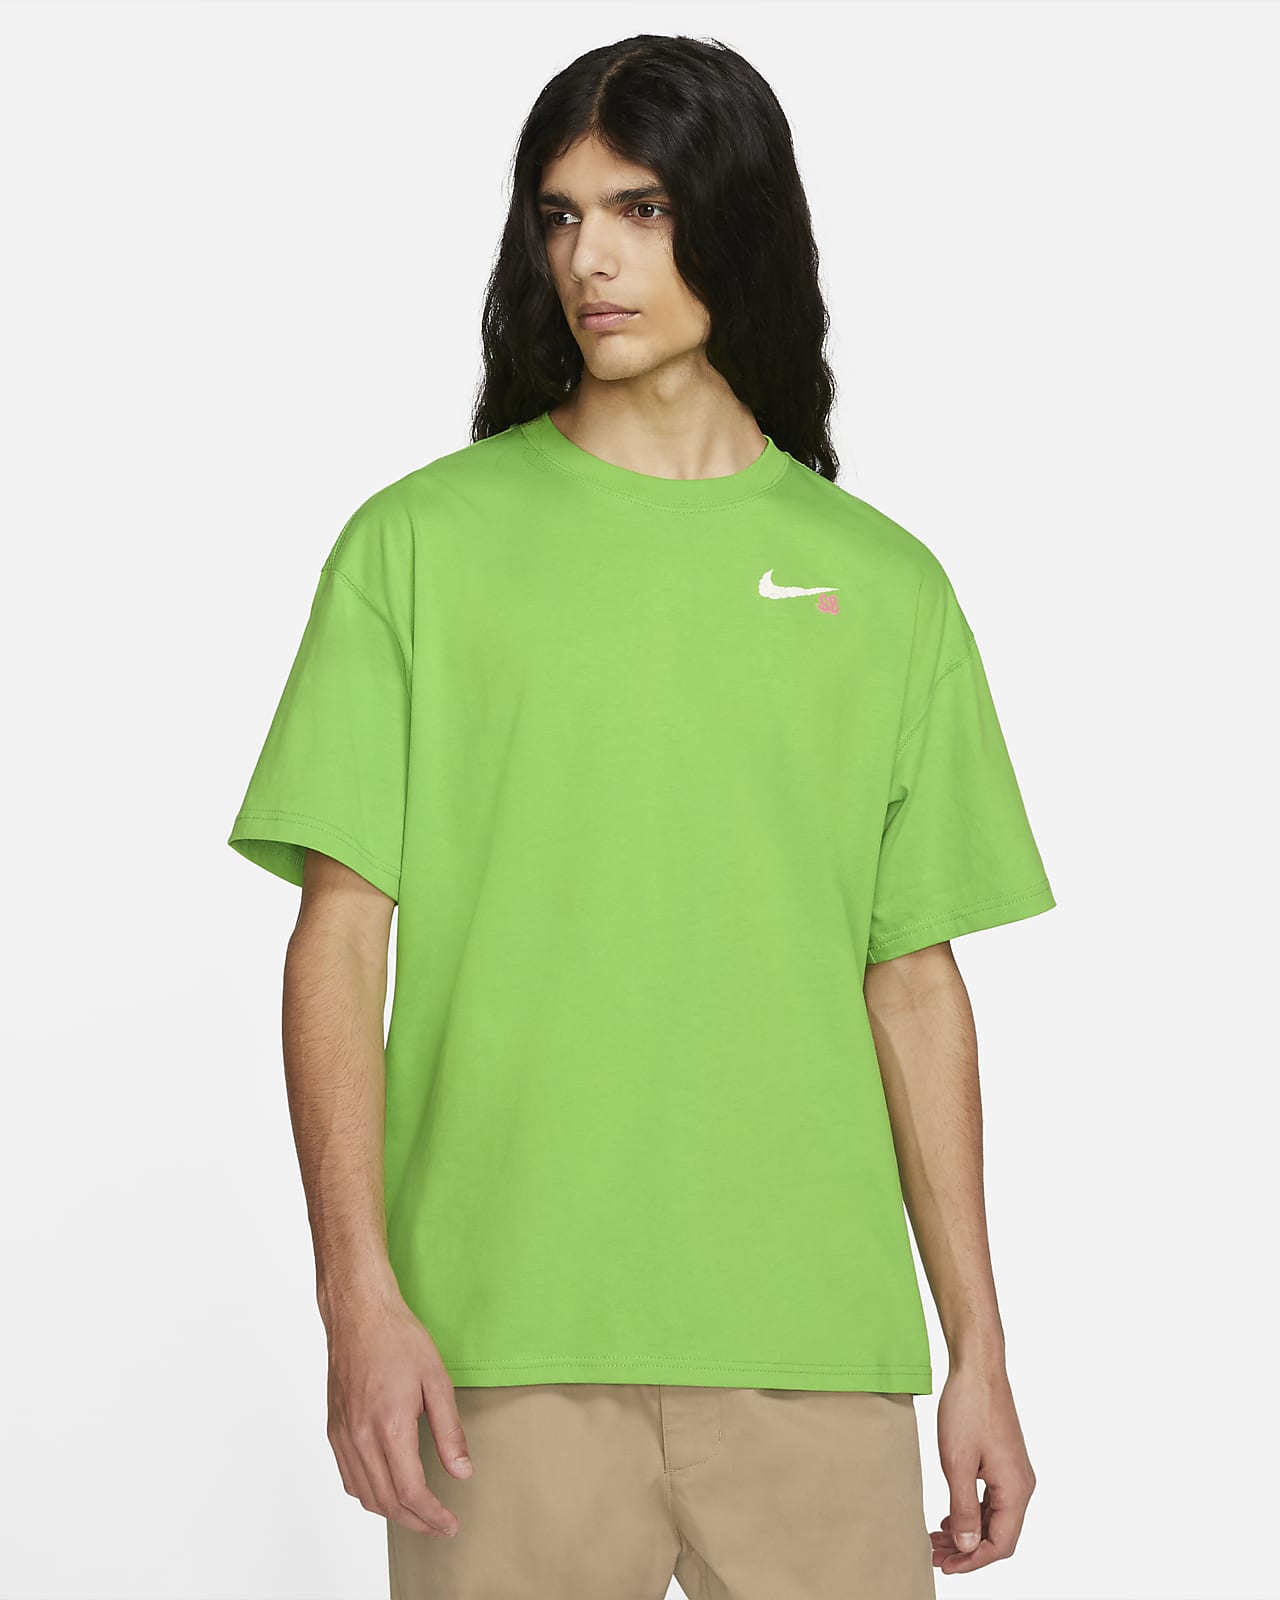 green shirt nike